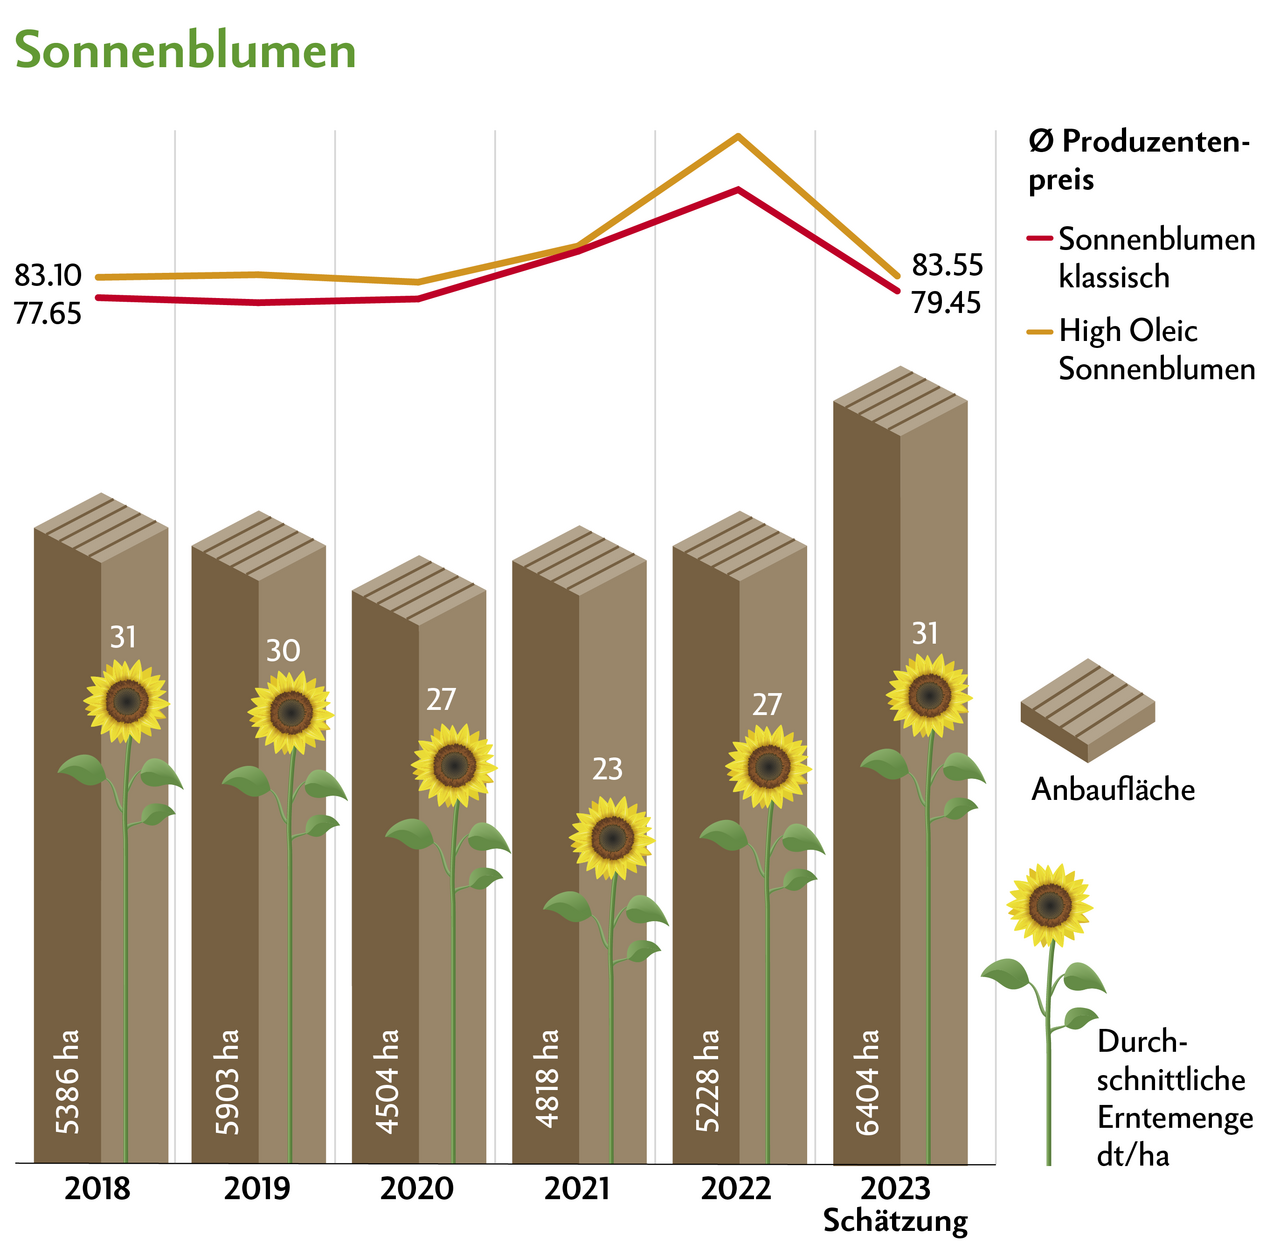 Auch bei den Sonnenblumen sinken die Preise. Dafür steigen die Anbauflächen dank höherer Verarbeitungskapazitäten. Quelle: Swissgranum